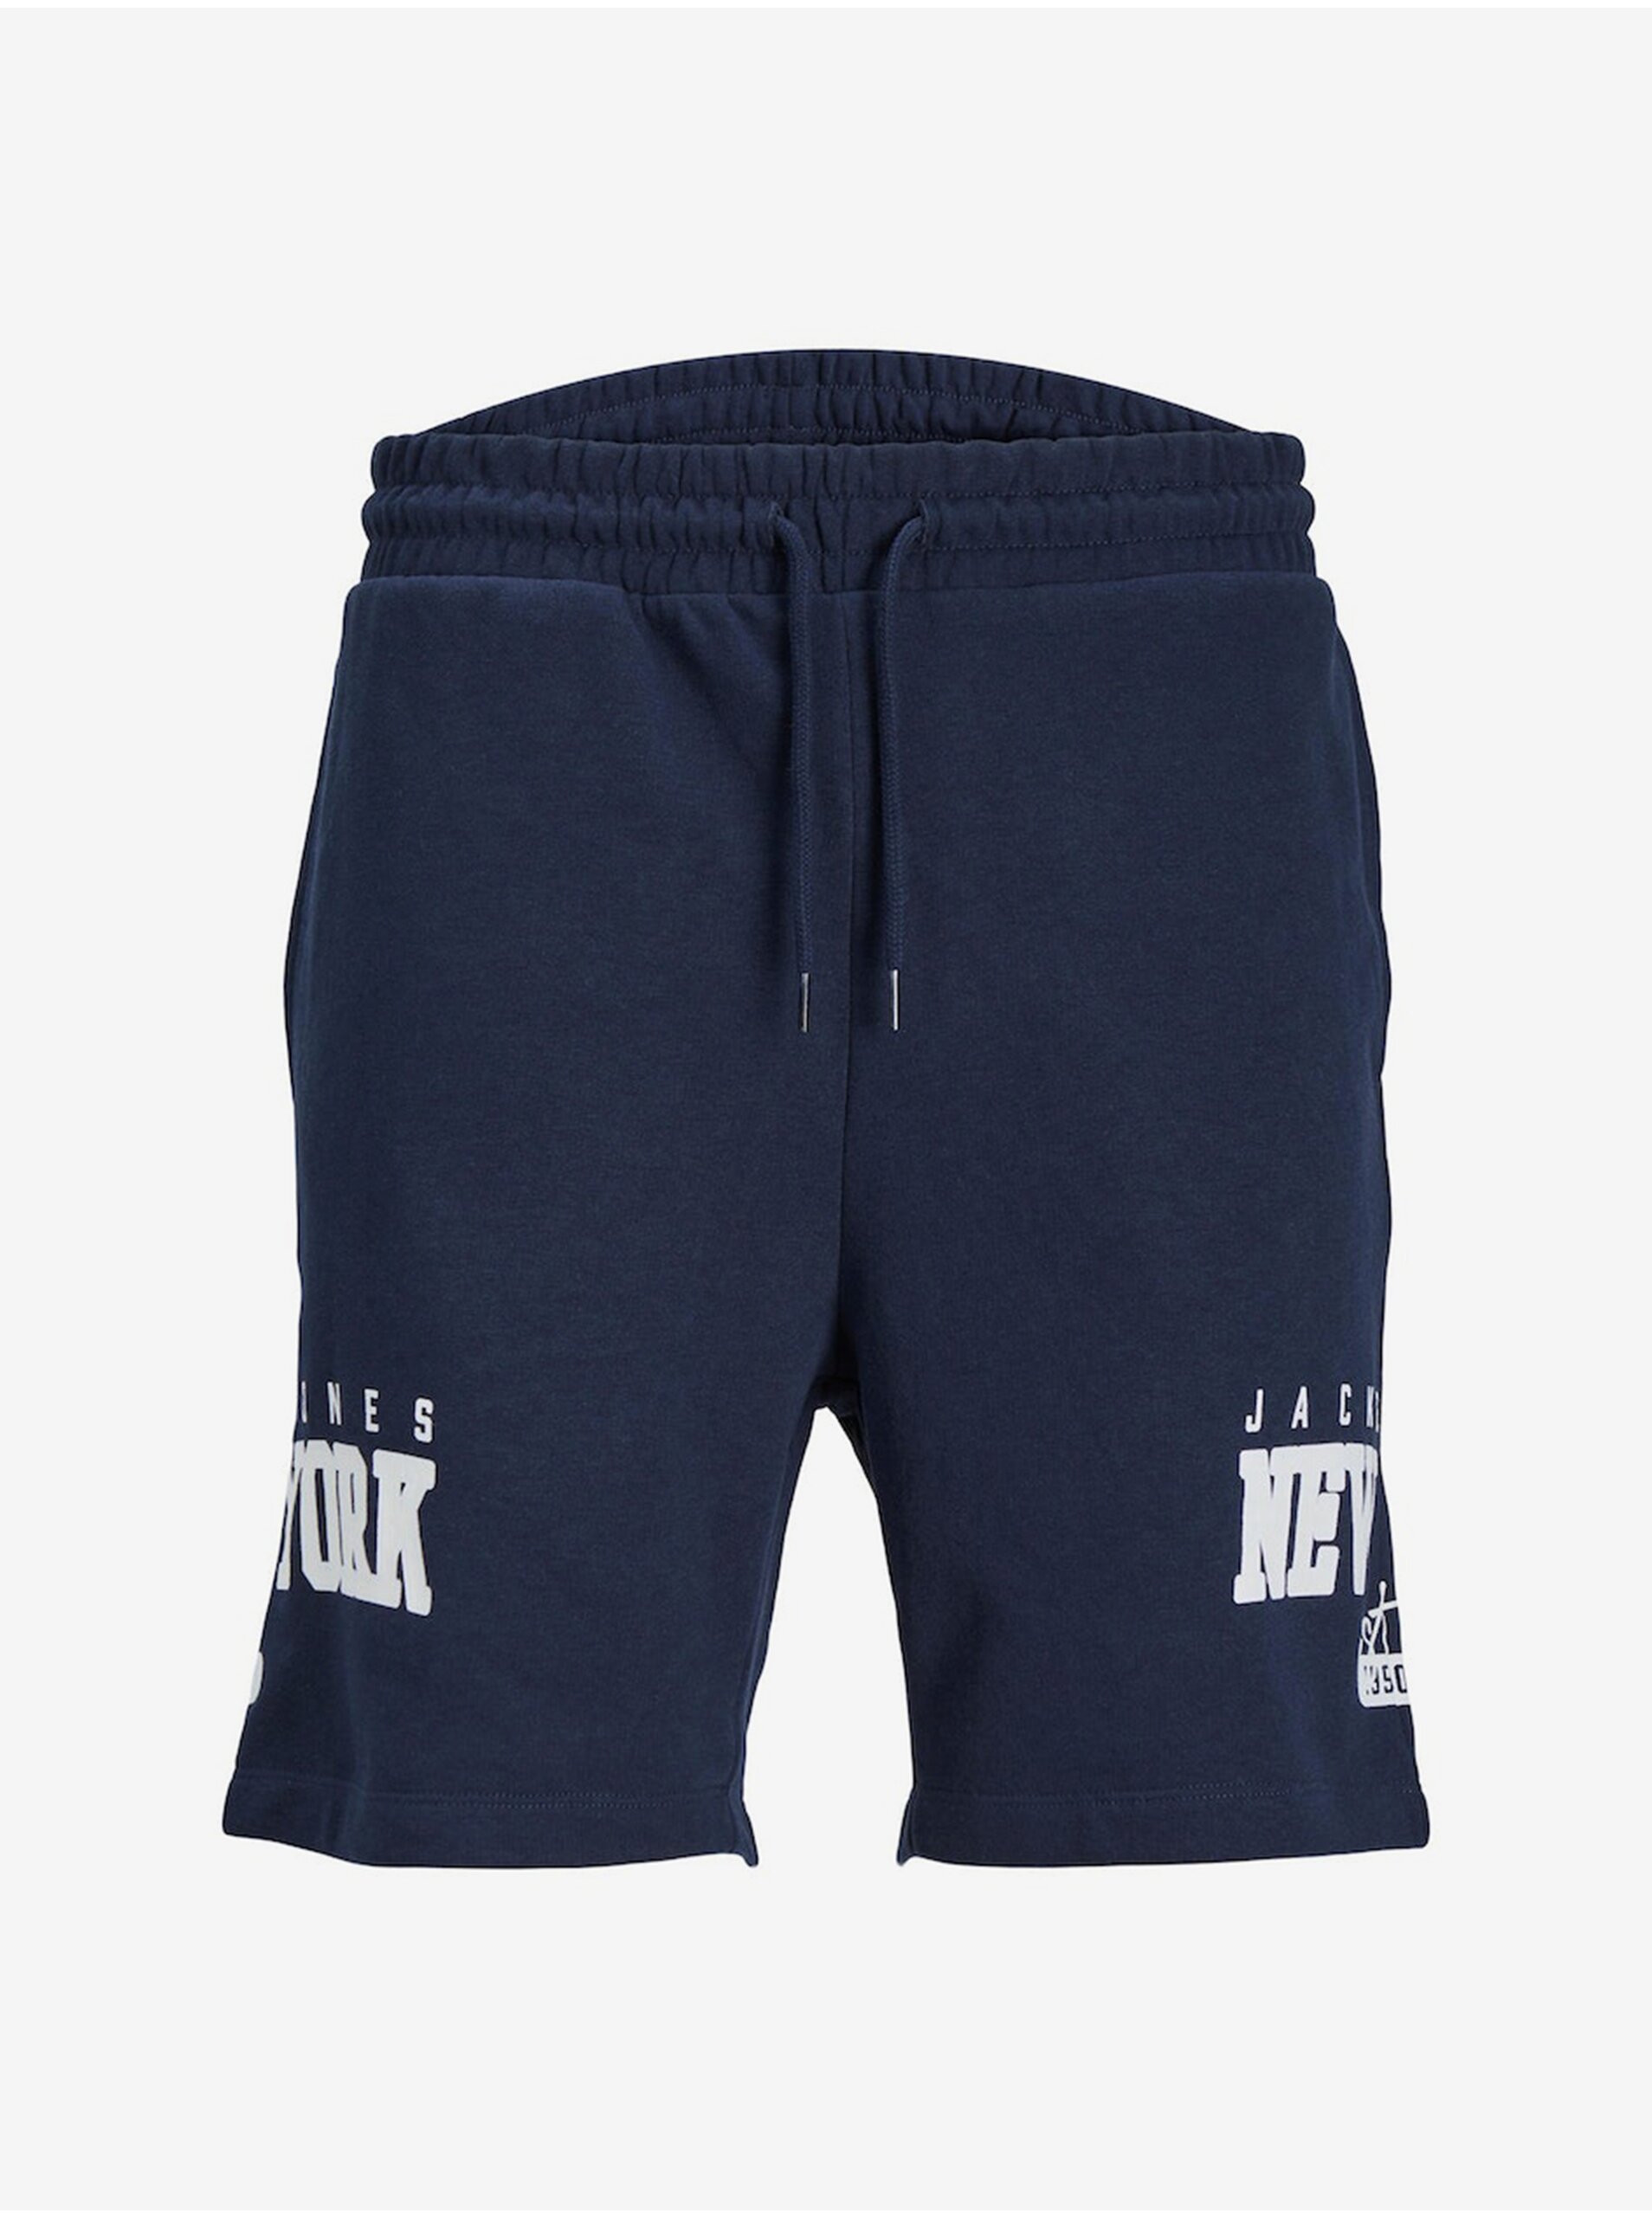 Jack & Jones Cory Men's Sweatpants Navy Blue Sweatpants - Men's